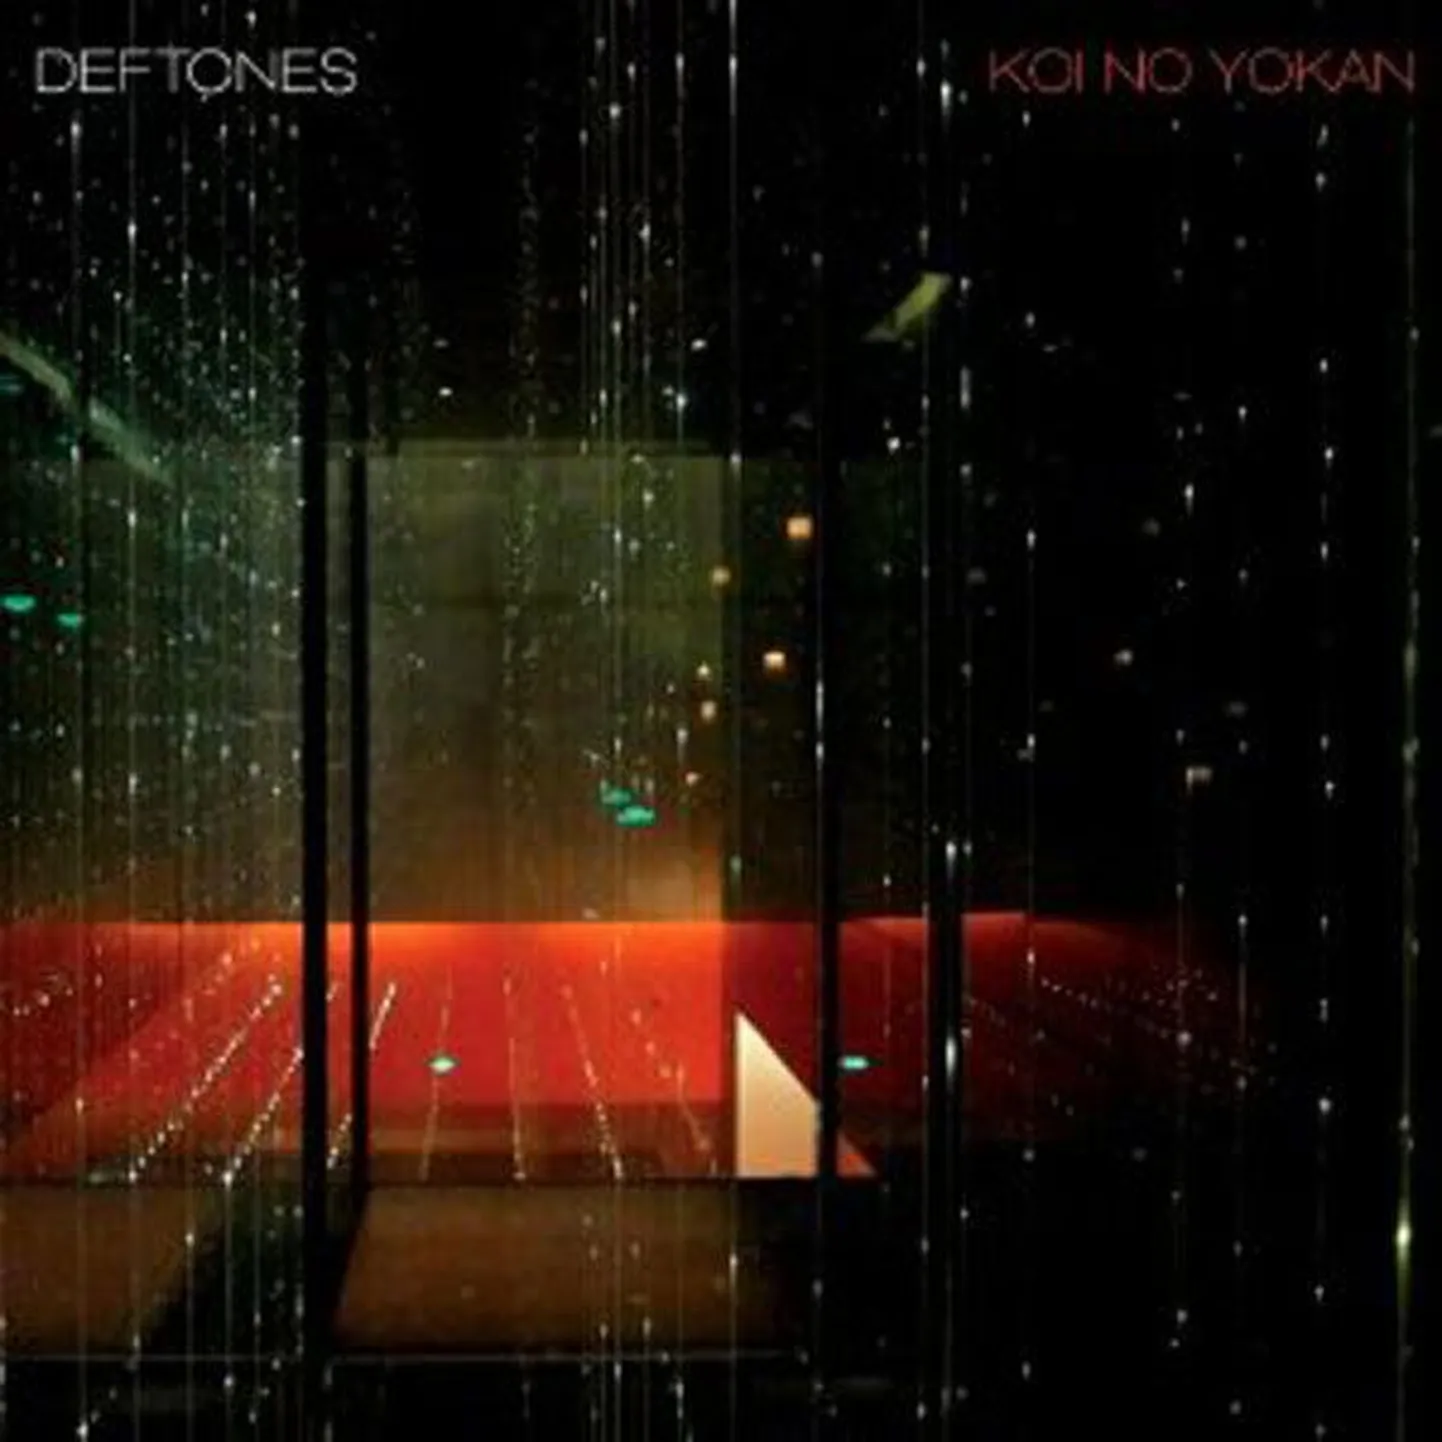 Deftones
Koi No Yokan 
(Reprise)